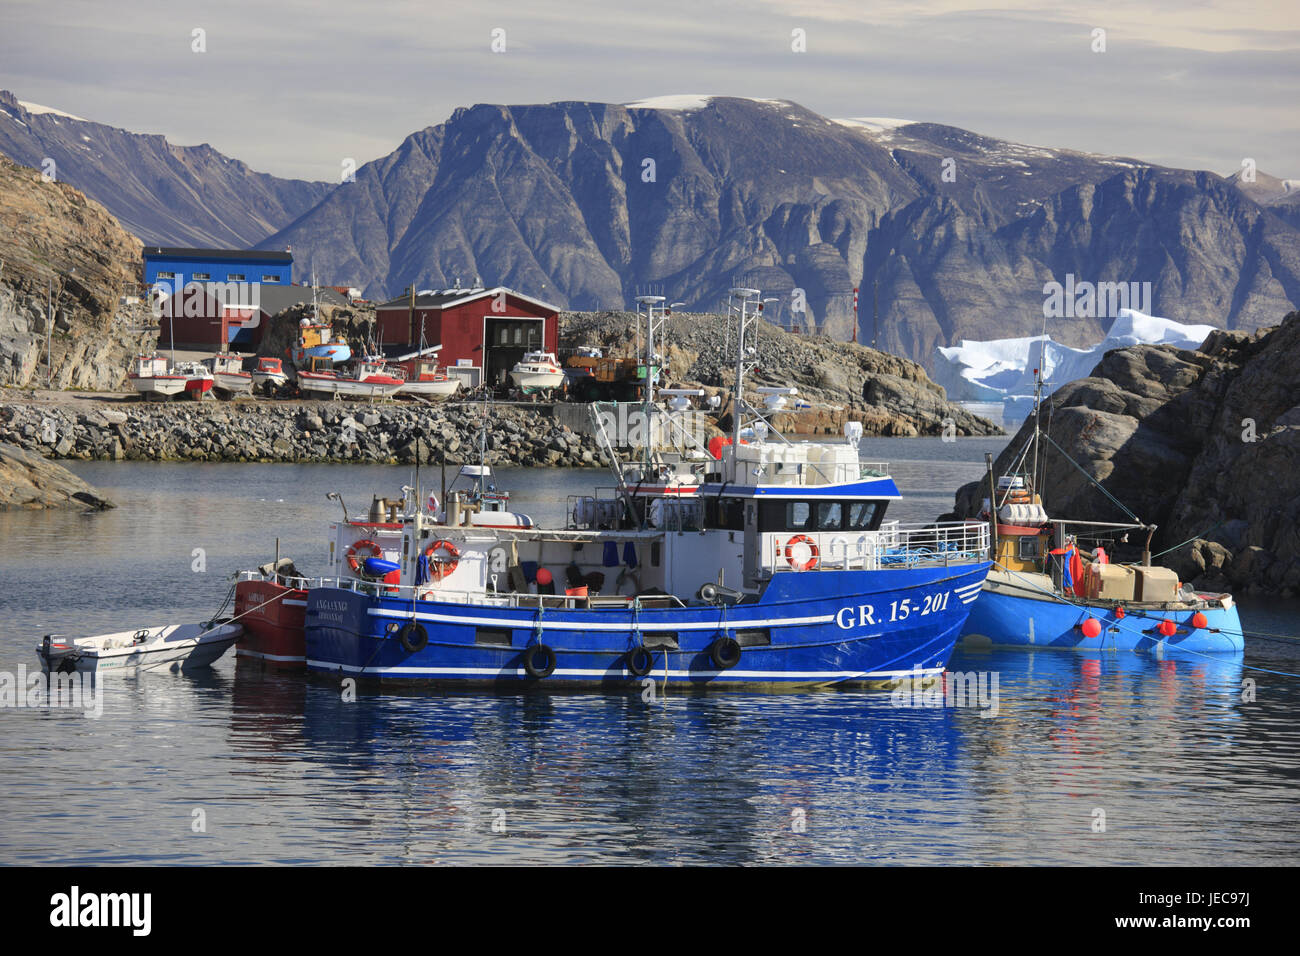 La Groenlandia, Uummannaq, fiordo, case di legno, porto, barche da pesca, nel nord della Groenlandia, destinazione, sul mare Artico, iceberg, montagna, ghiacciaio, case, case di pesca, costa, fuori, deserte, liquidazione, barche, pesca pescherecci da traino, pesca, pesca sportiva, Foto Stock